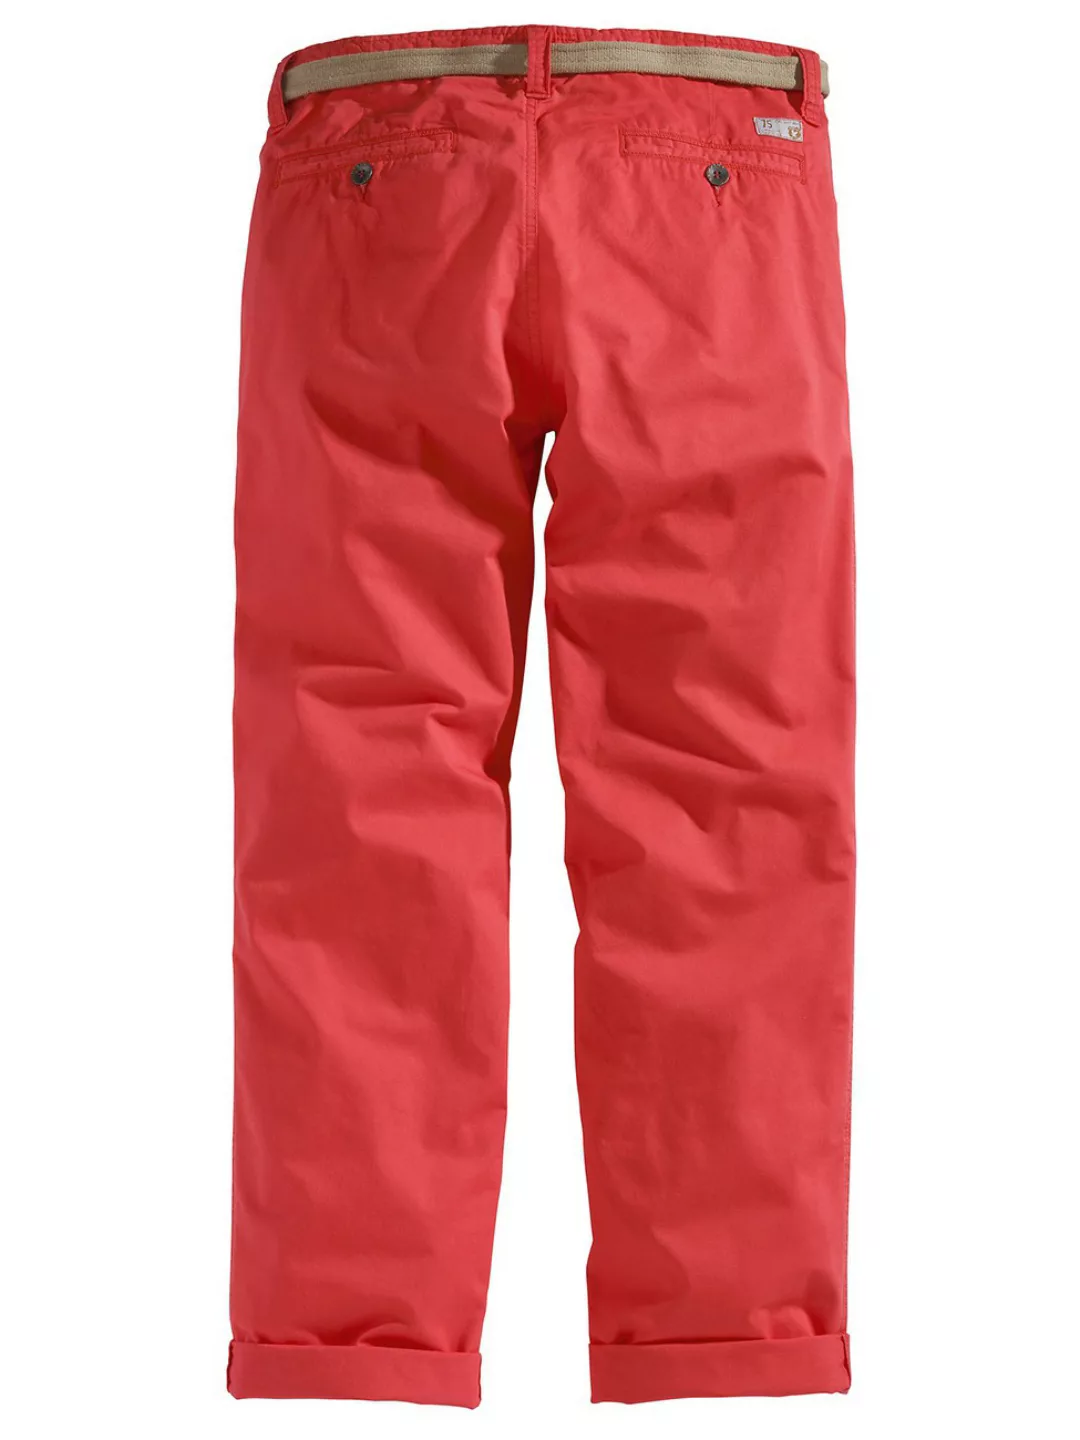 Surplus Herren Hose Chino Trousers 05-3604 günstig online kaufen